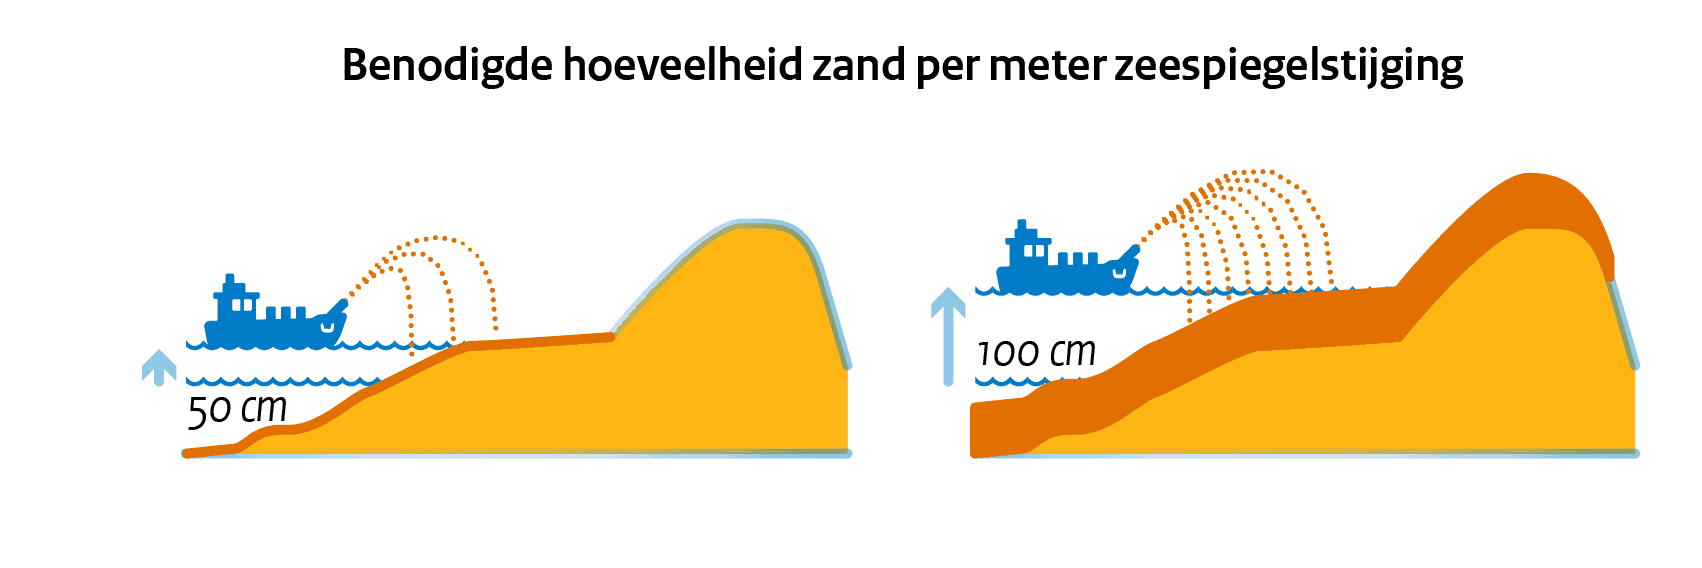 Benodigde hoeveelheid zand per meter zeespiegelstijging (zandsuppletie)